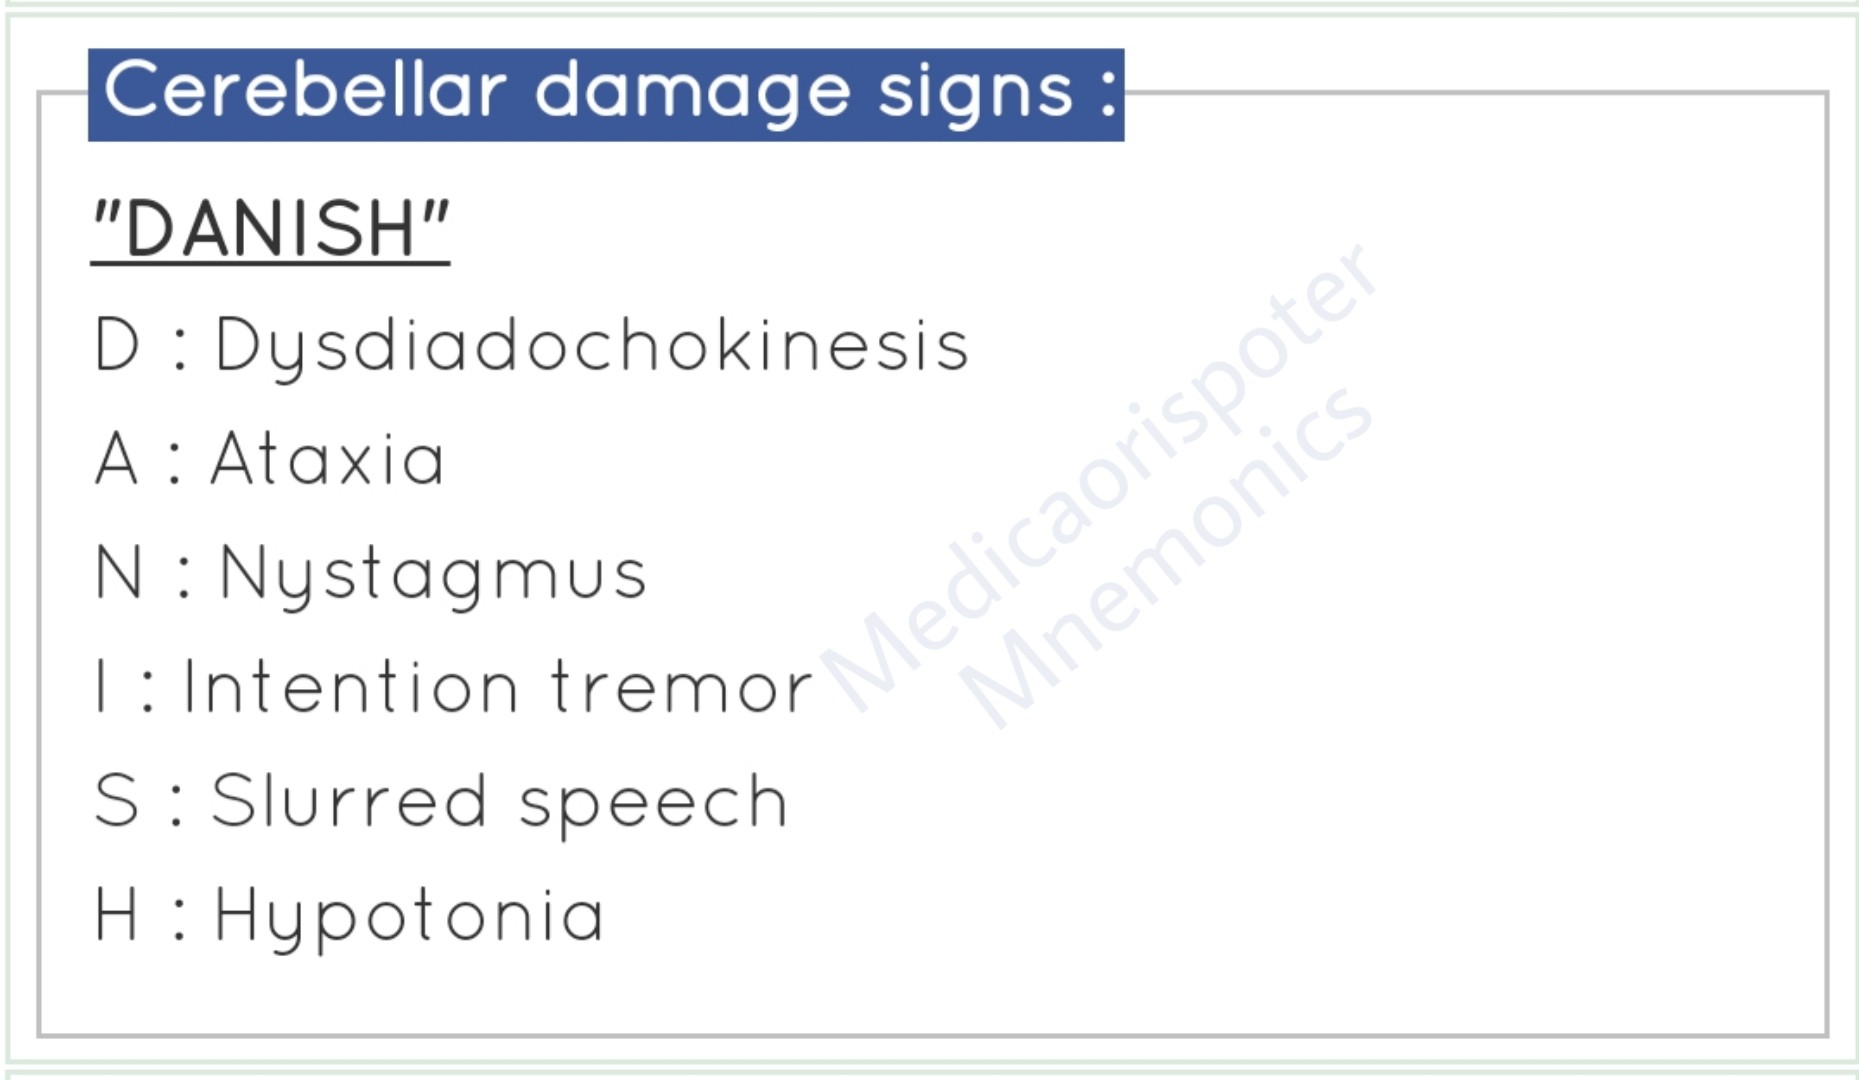 Signs of Cerebellar Damage